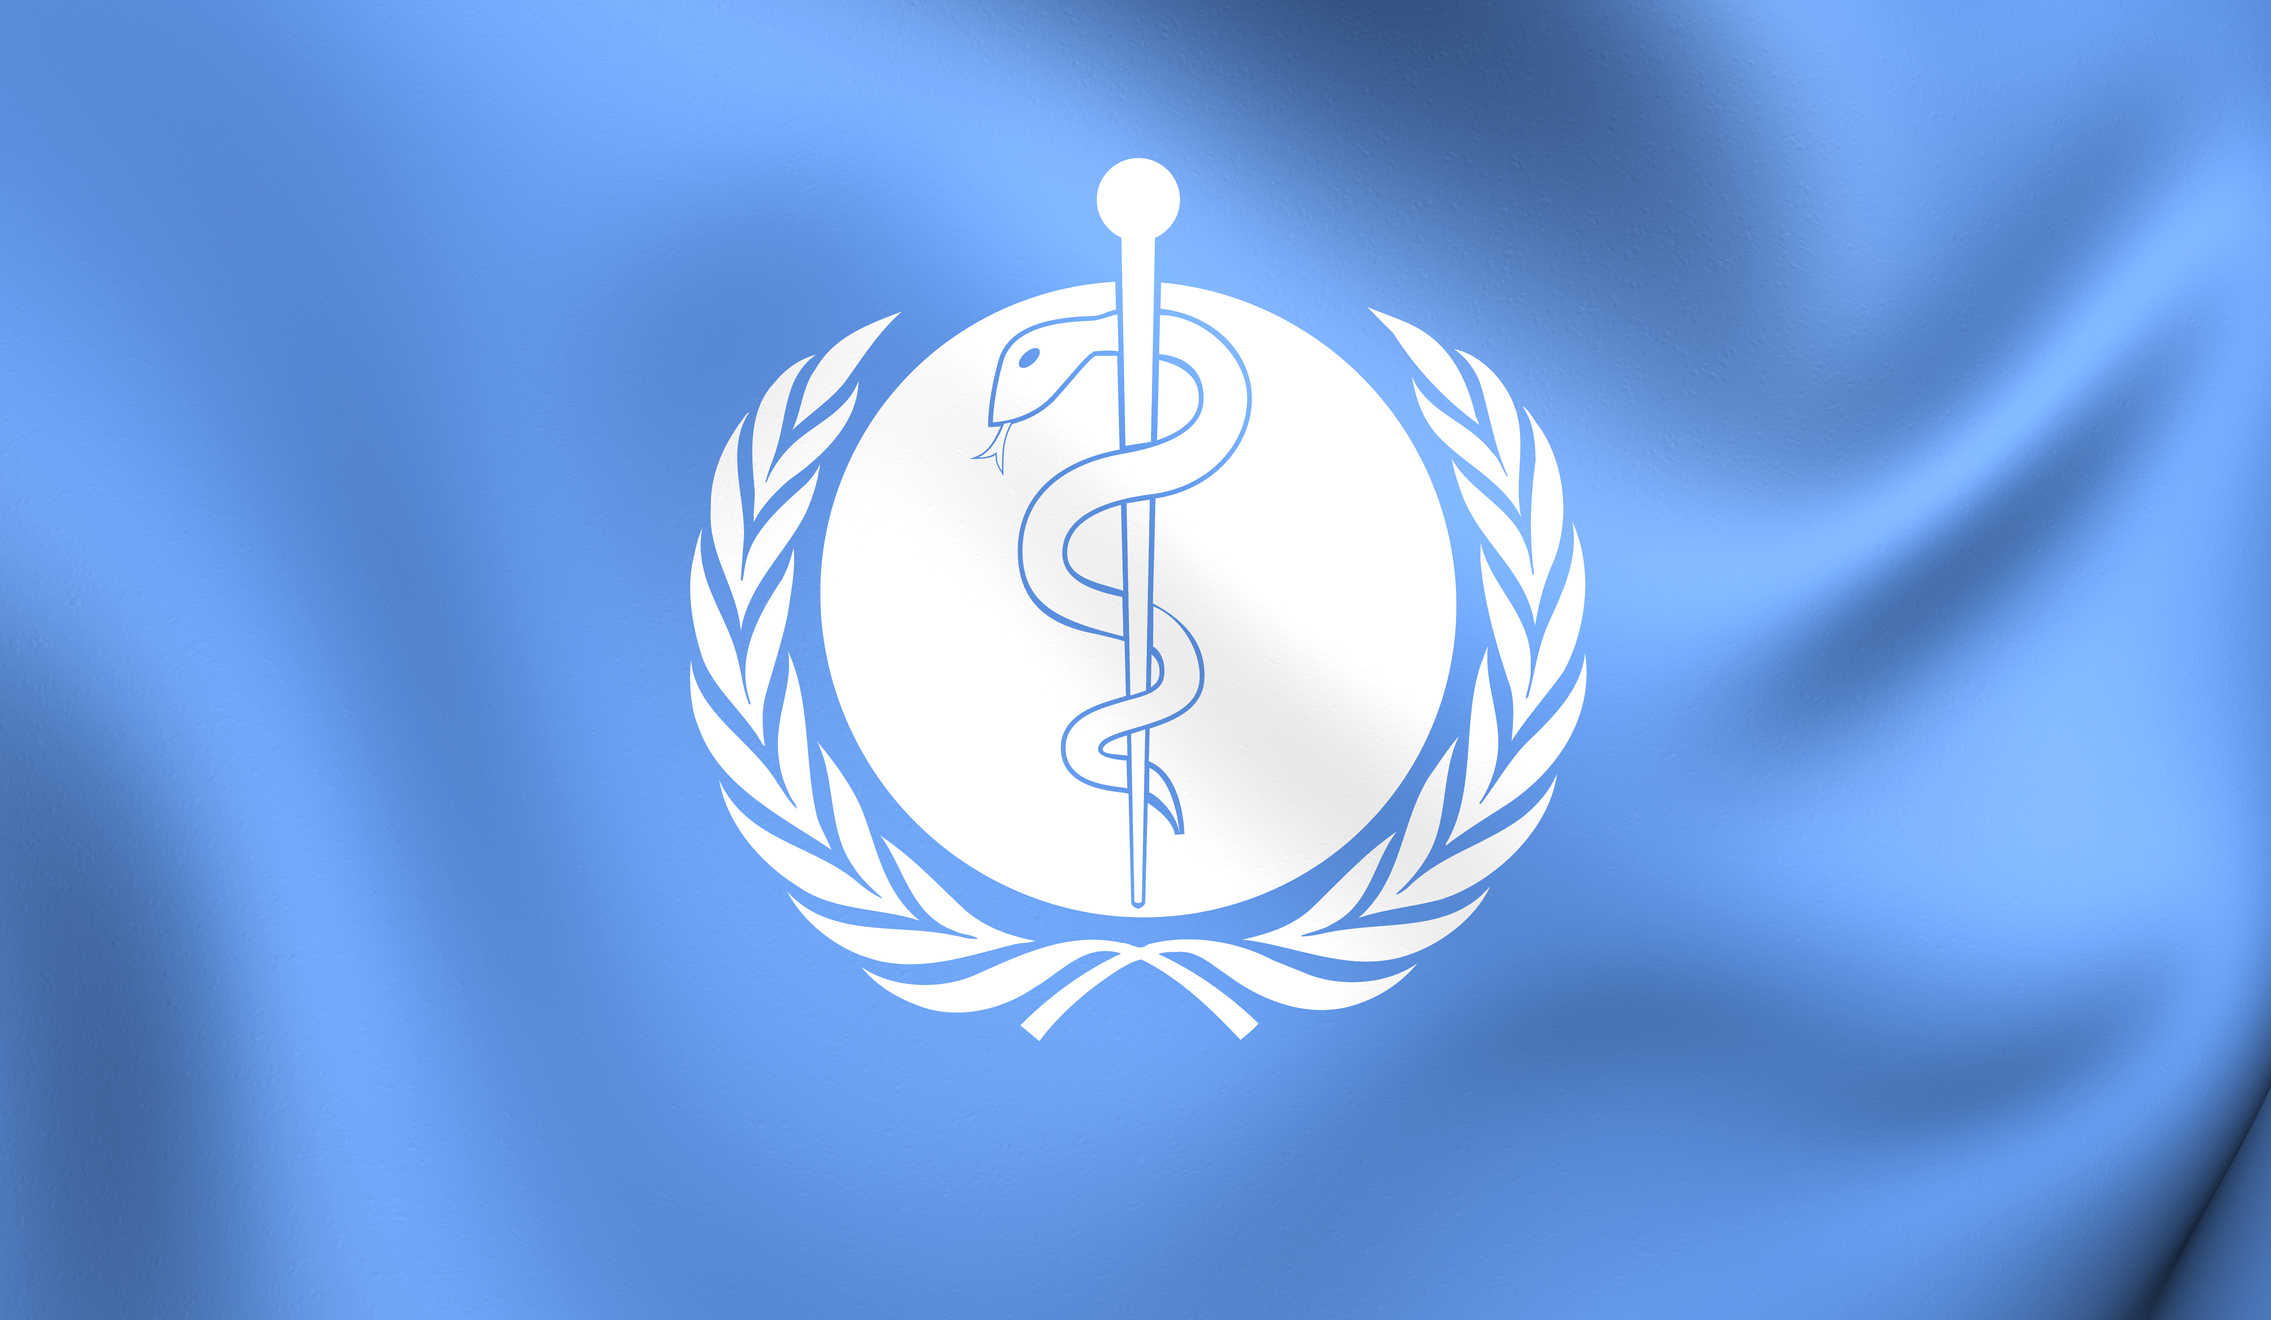 Flag of World Health Organization